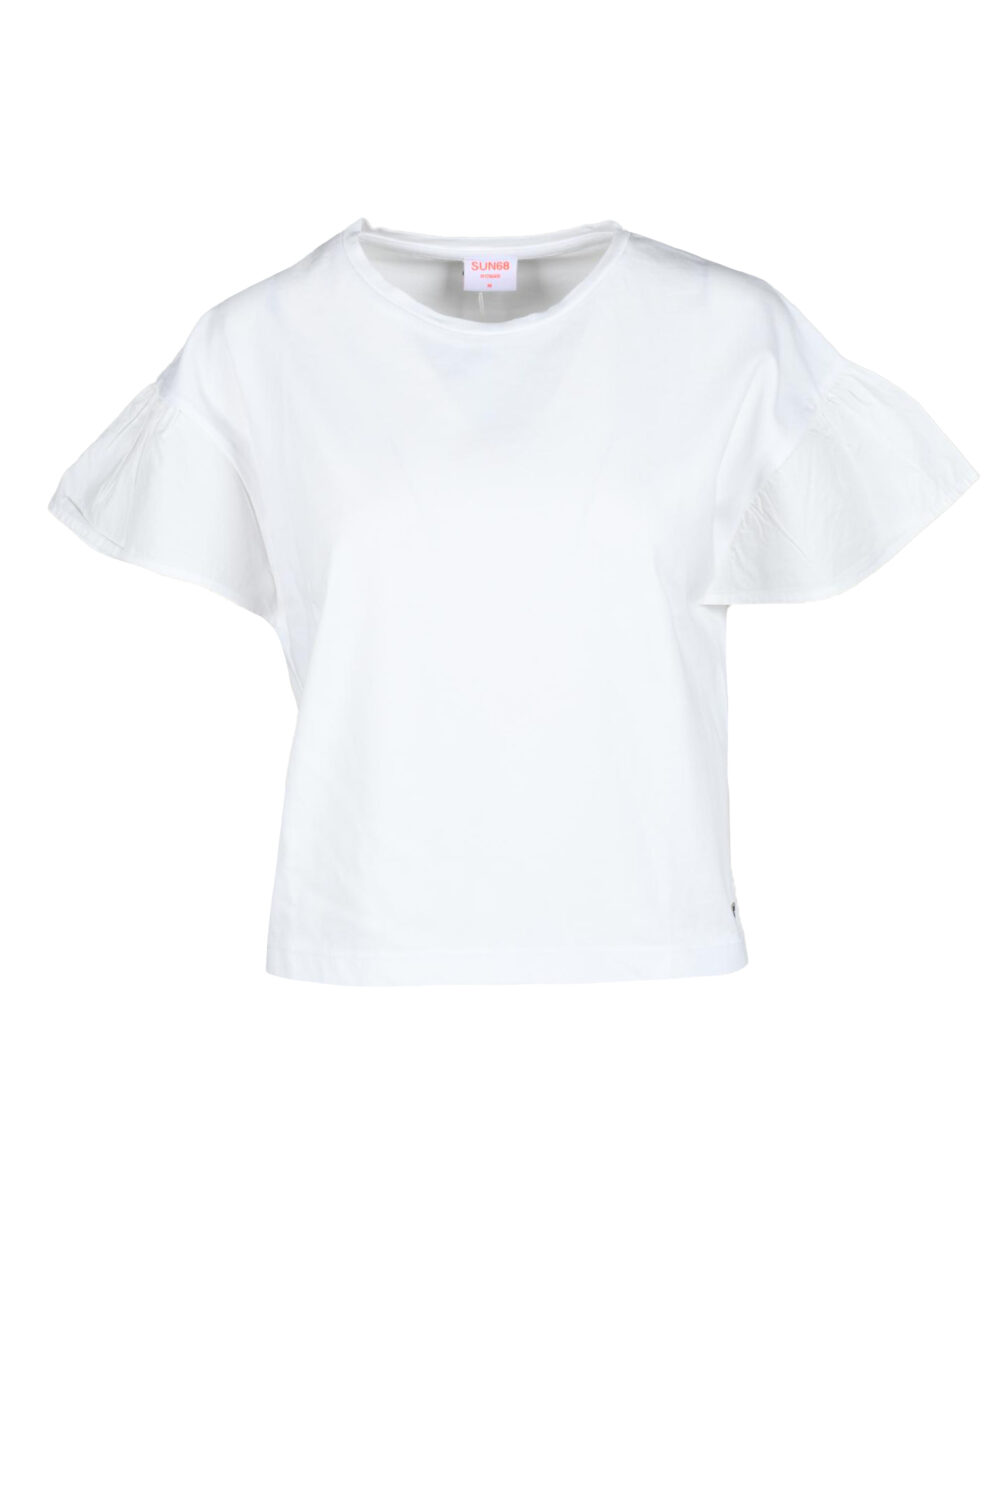 T-shirt SUN68 Bianco - Foto 1